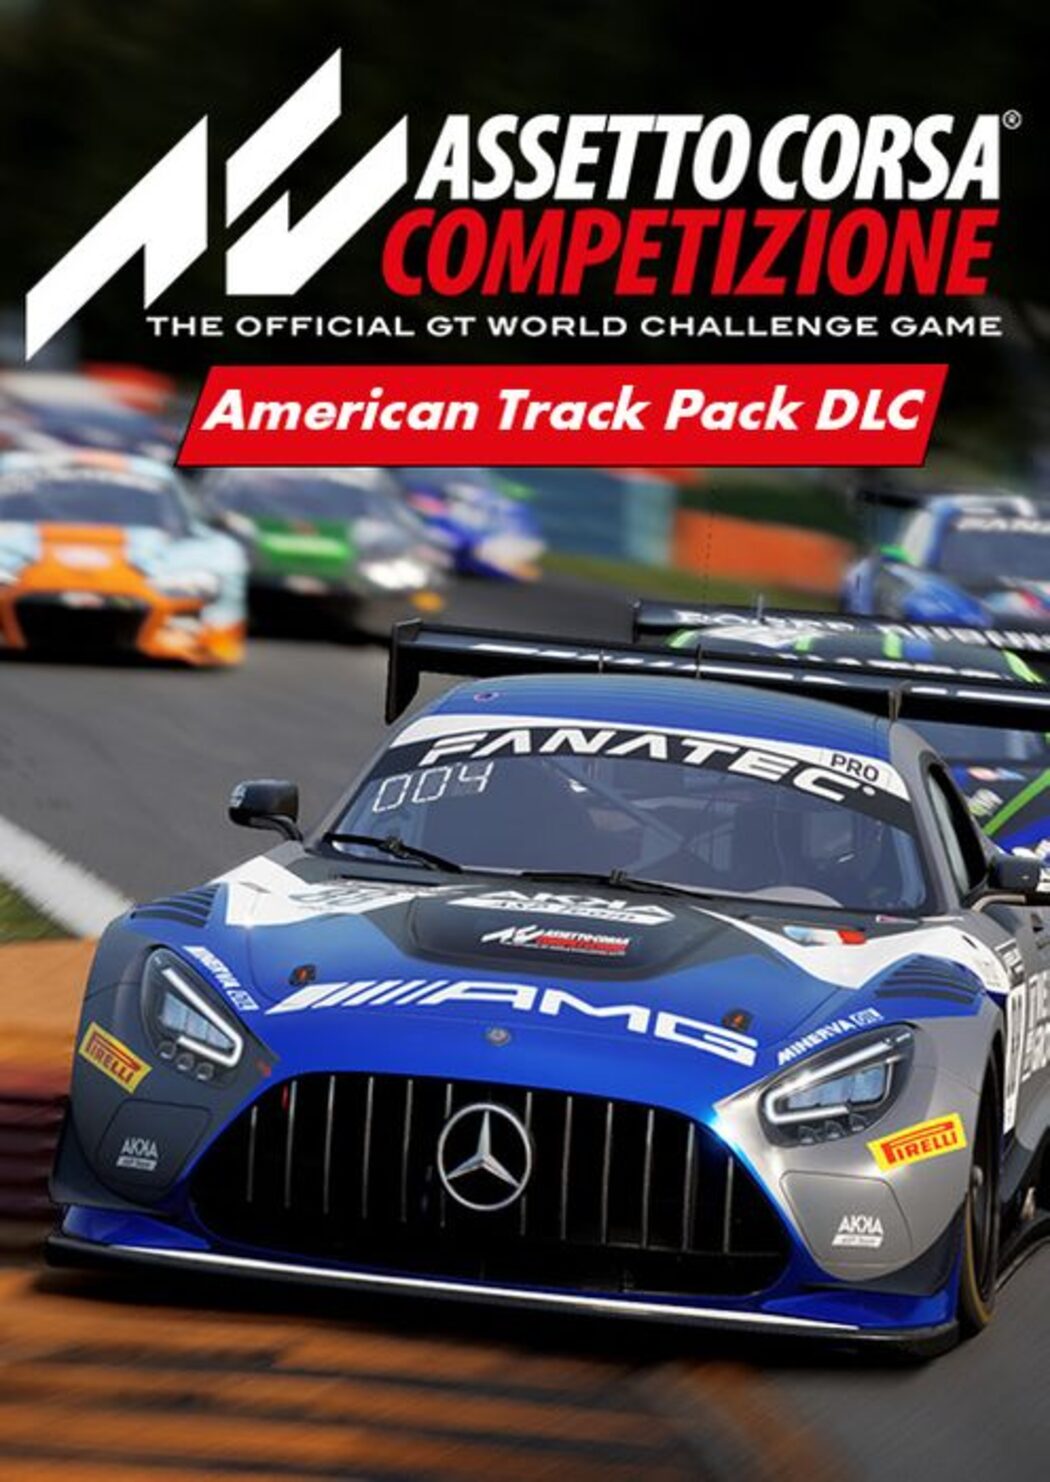 Descargar Assetto Corsa Competizione - American Track Pack Torrent